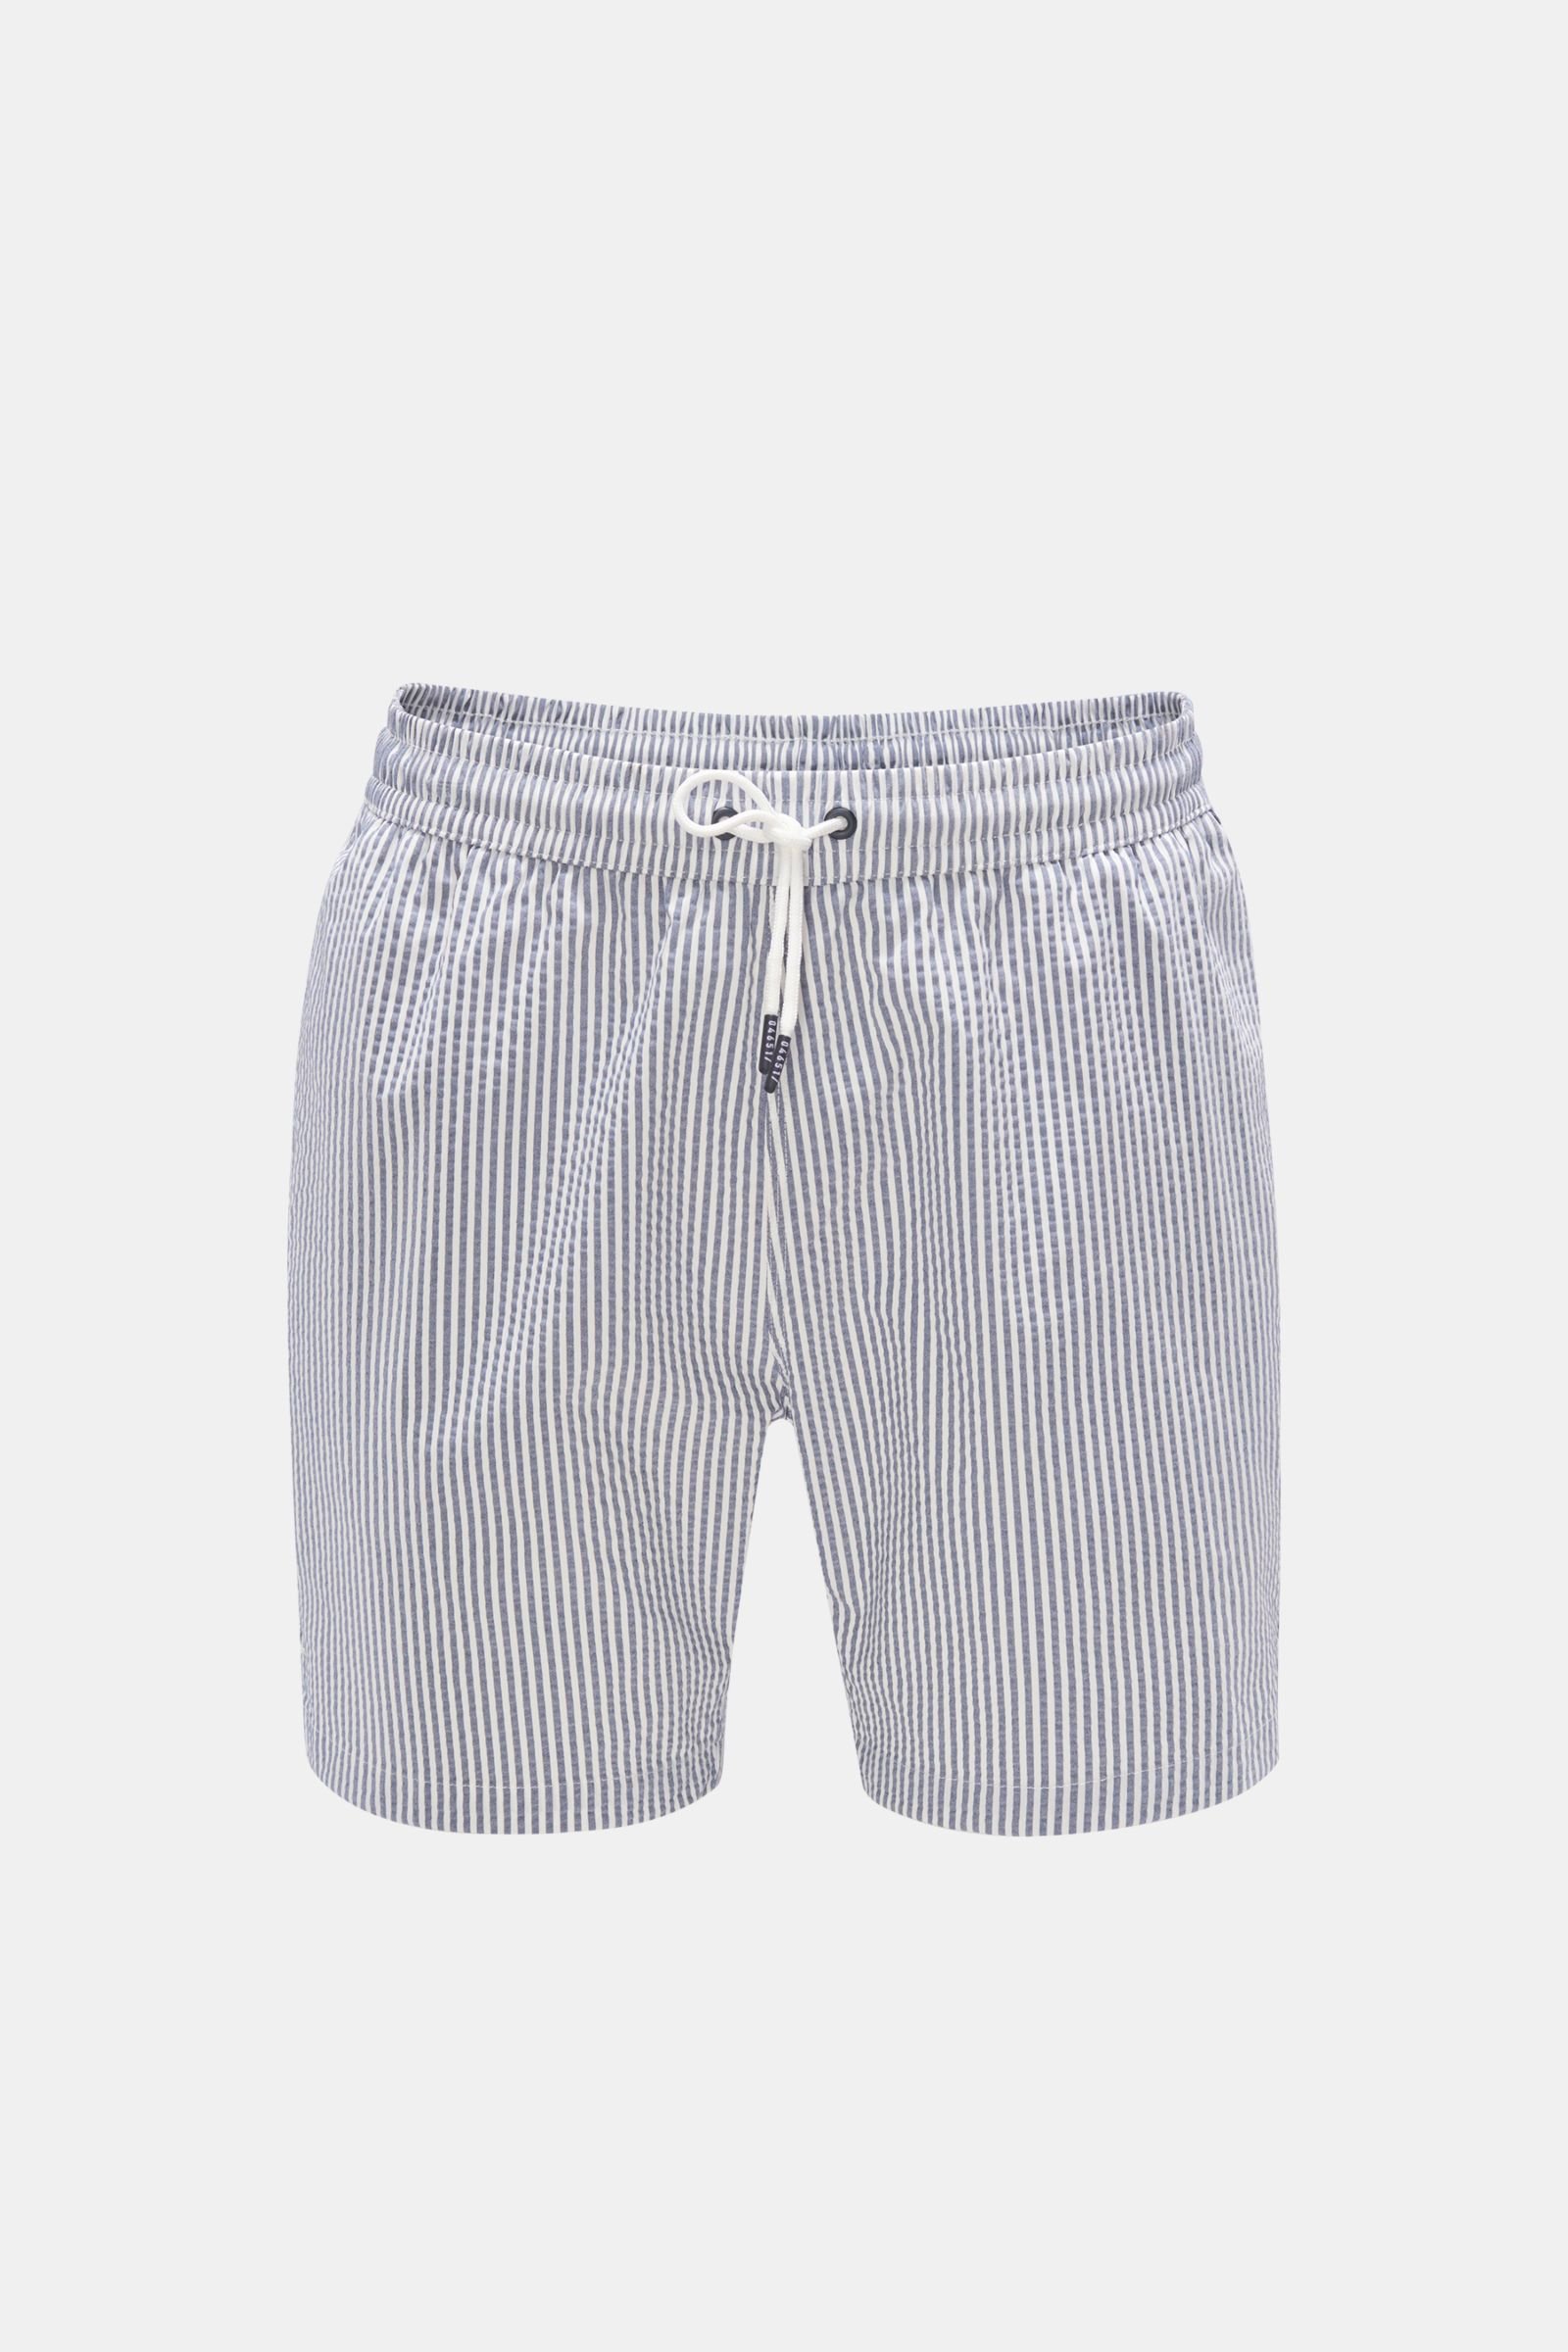 Seersucker swim shorts 'Seersucker Swim' grey-blue/white striped